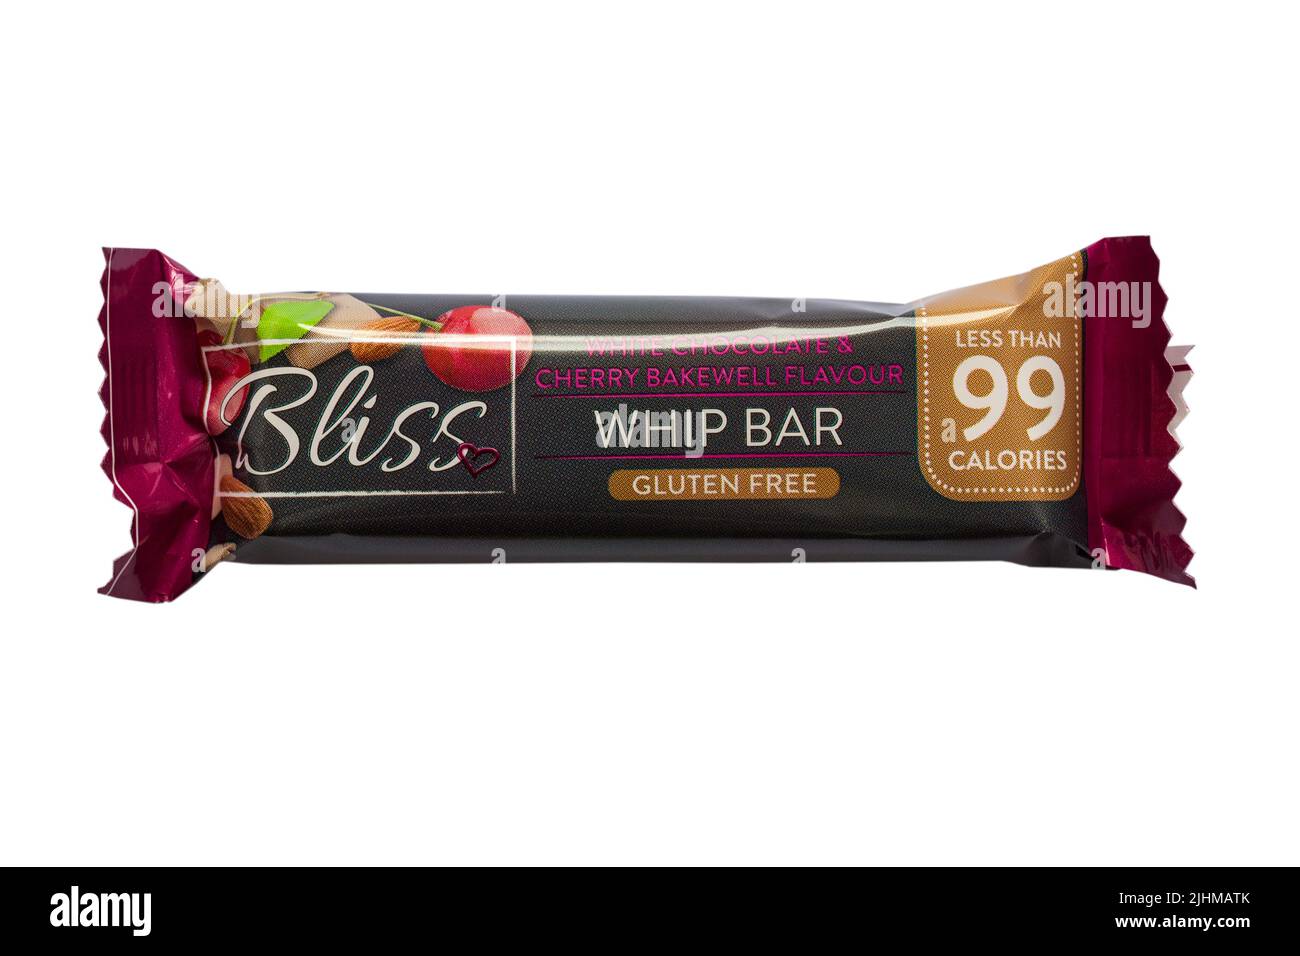 Bliss bianco cioccolato & ciliegia bakewell sapore frusta bar senza glutine isolato su sfondo bianco Foto Stock